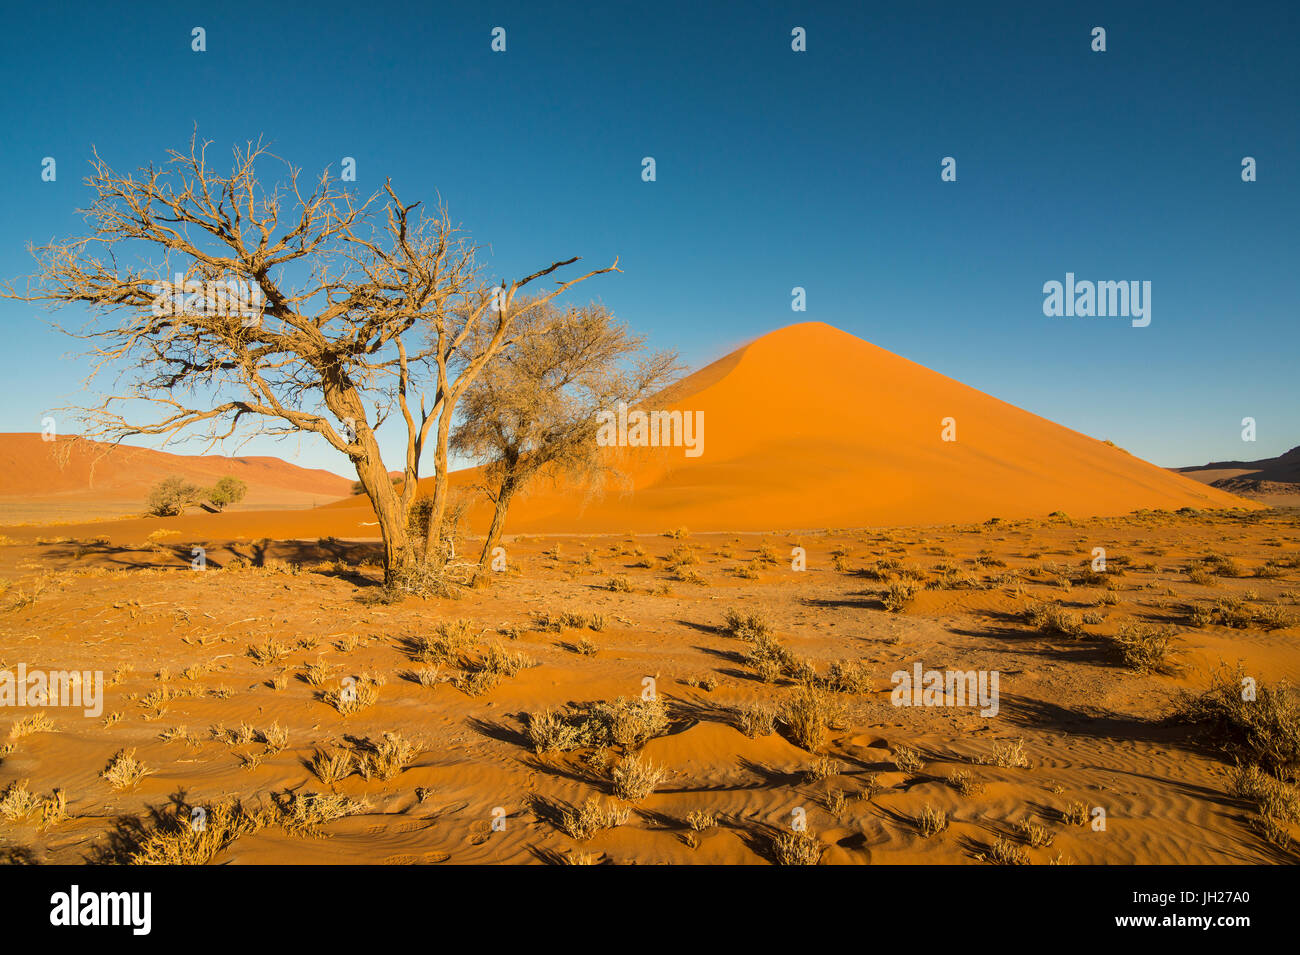 Acacia arbre en face de la Dune de sable géant 45, Sossusvlei, Namib-Naukluft National Park, Namibie, Afrique Banque D'Images